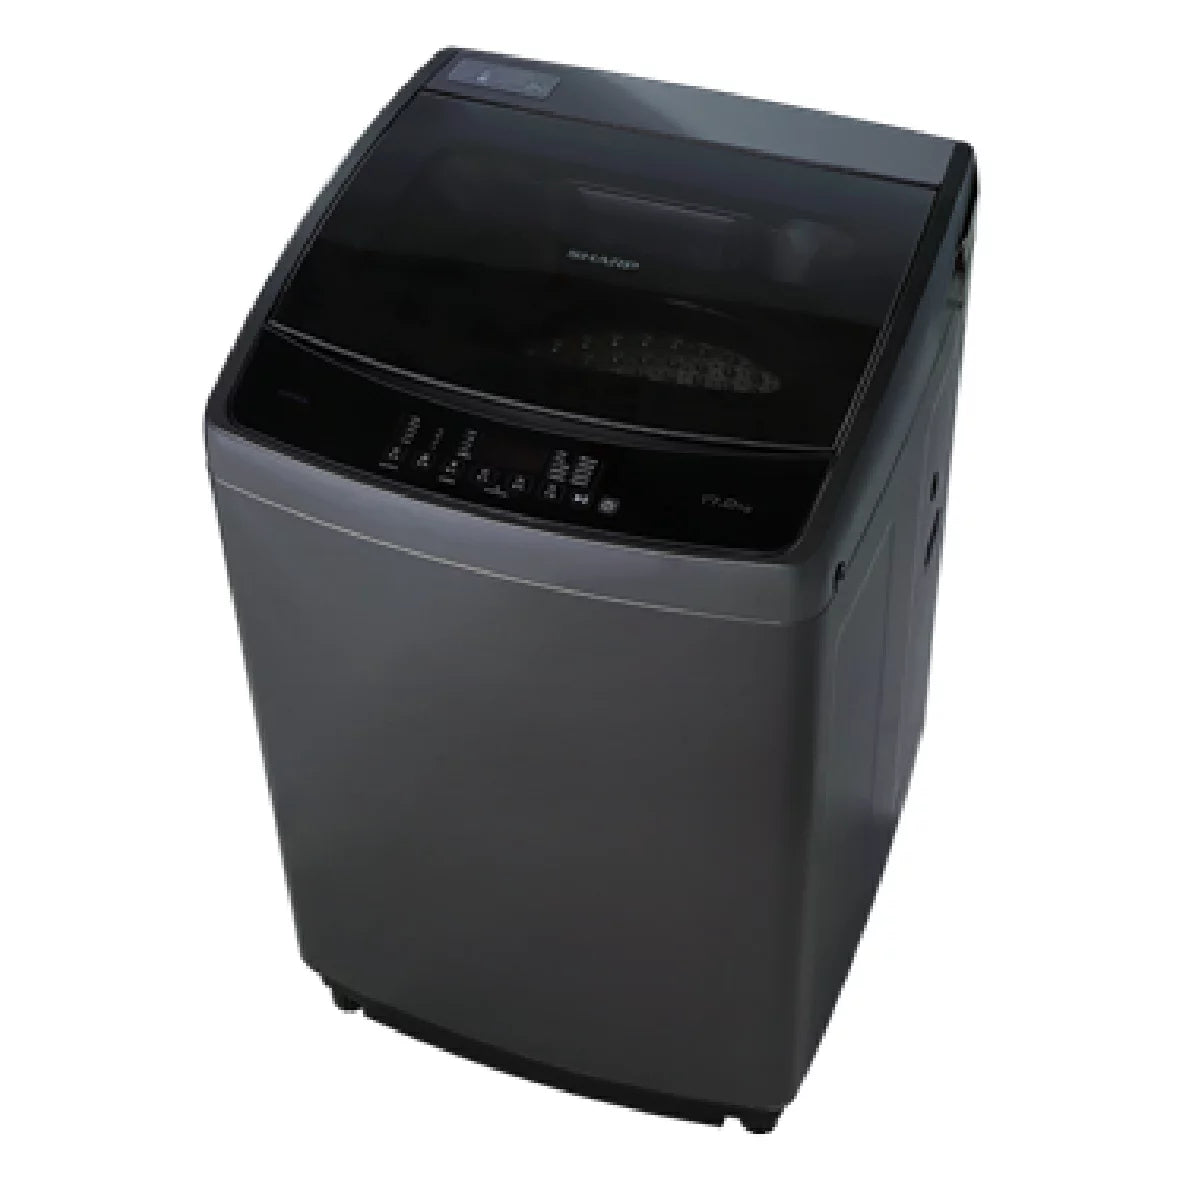 🔥新品上市🔥【夏普SHARP】抗菌系列洗衣機ES-G17AT-S